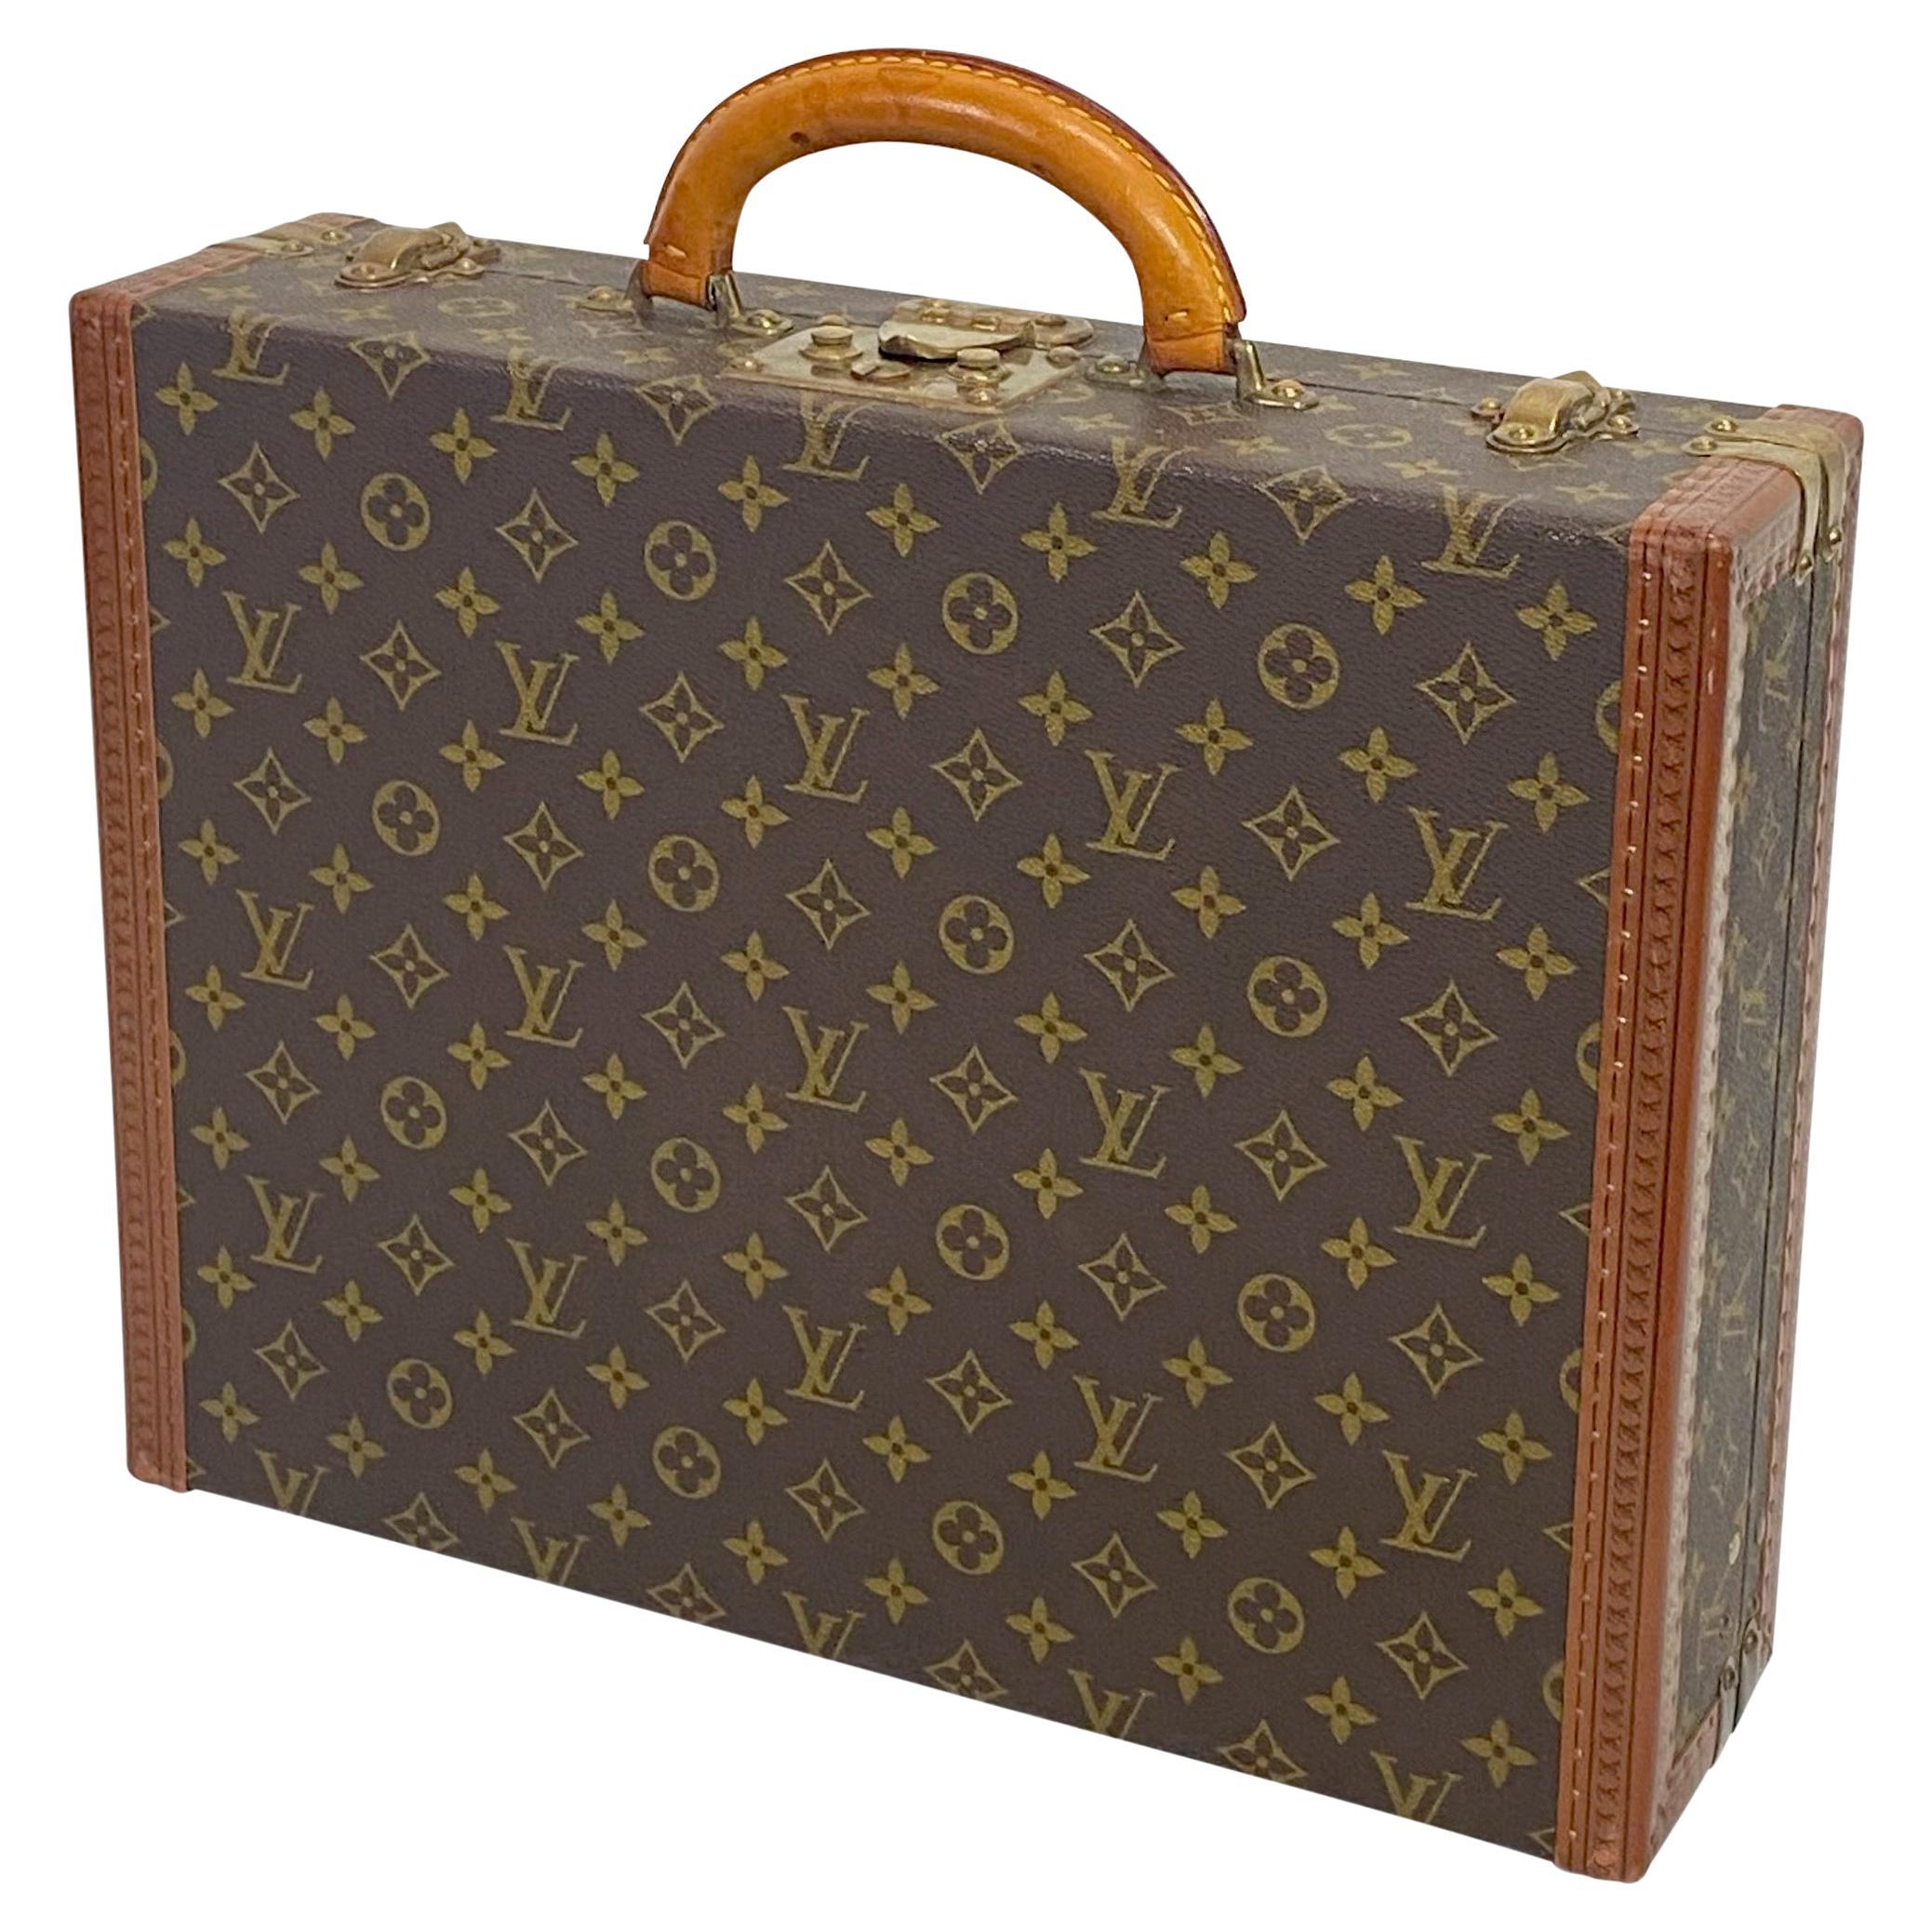 Authentique valise de valise Louis Vuitton vintage